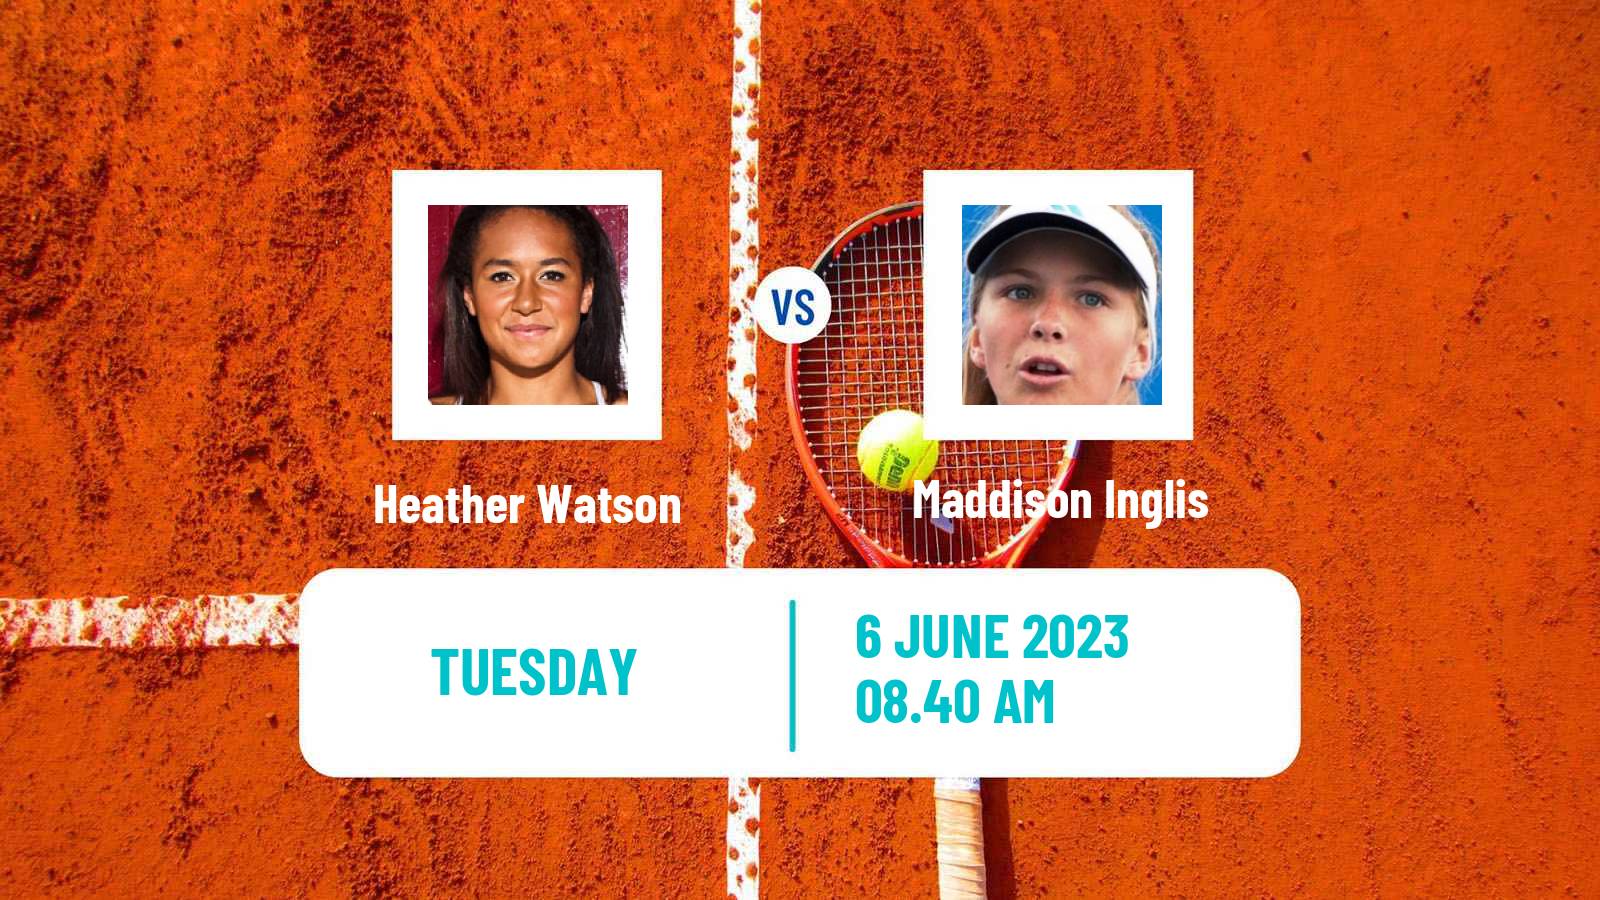 Tennis ITF W100 Surbiton Women Heather Watson - Maddison Inglis